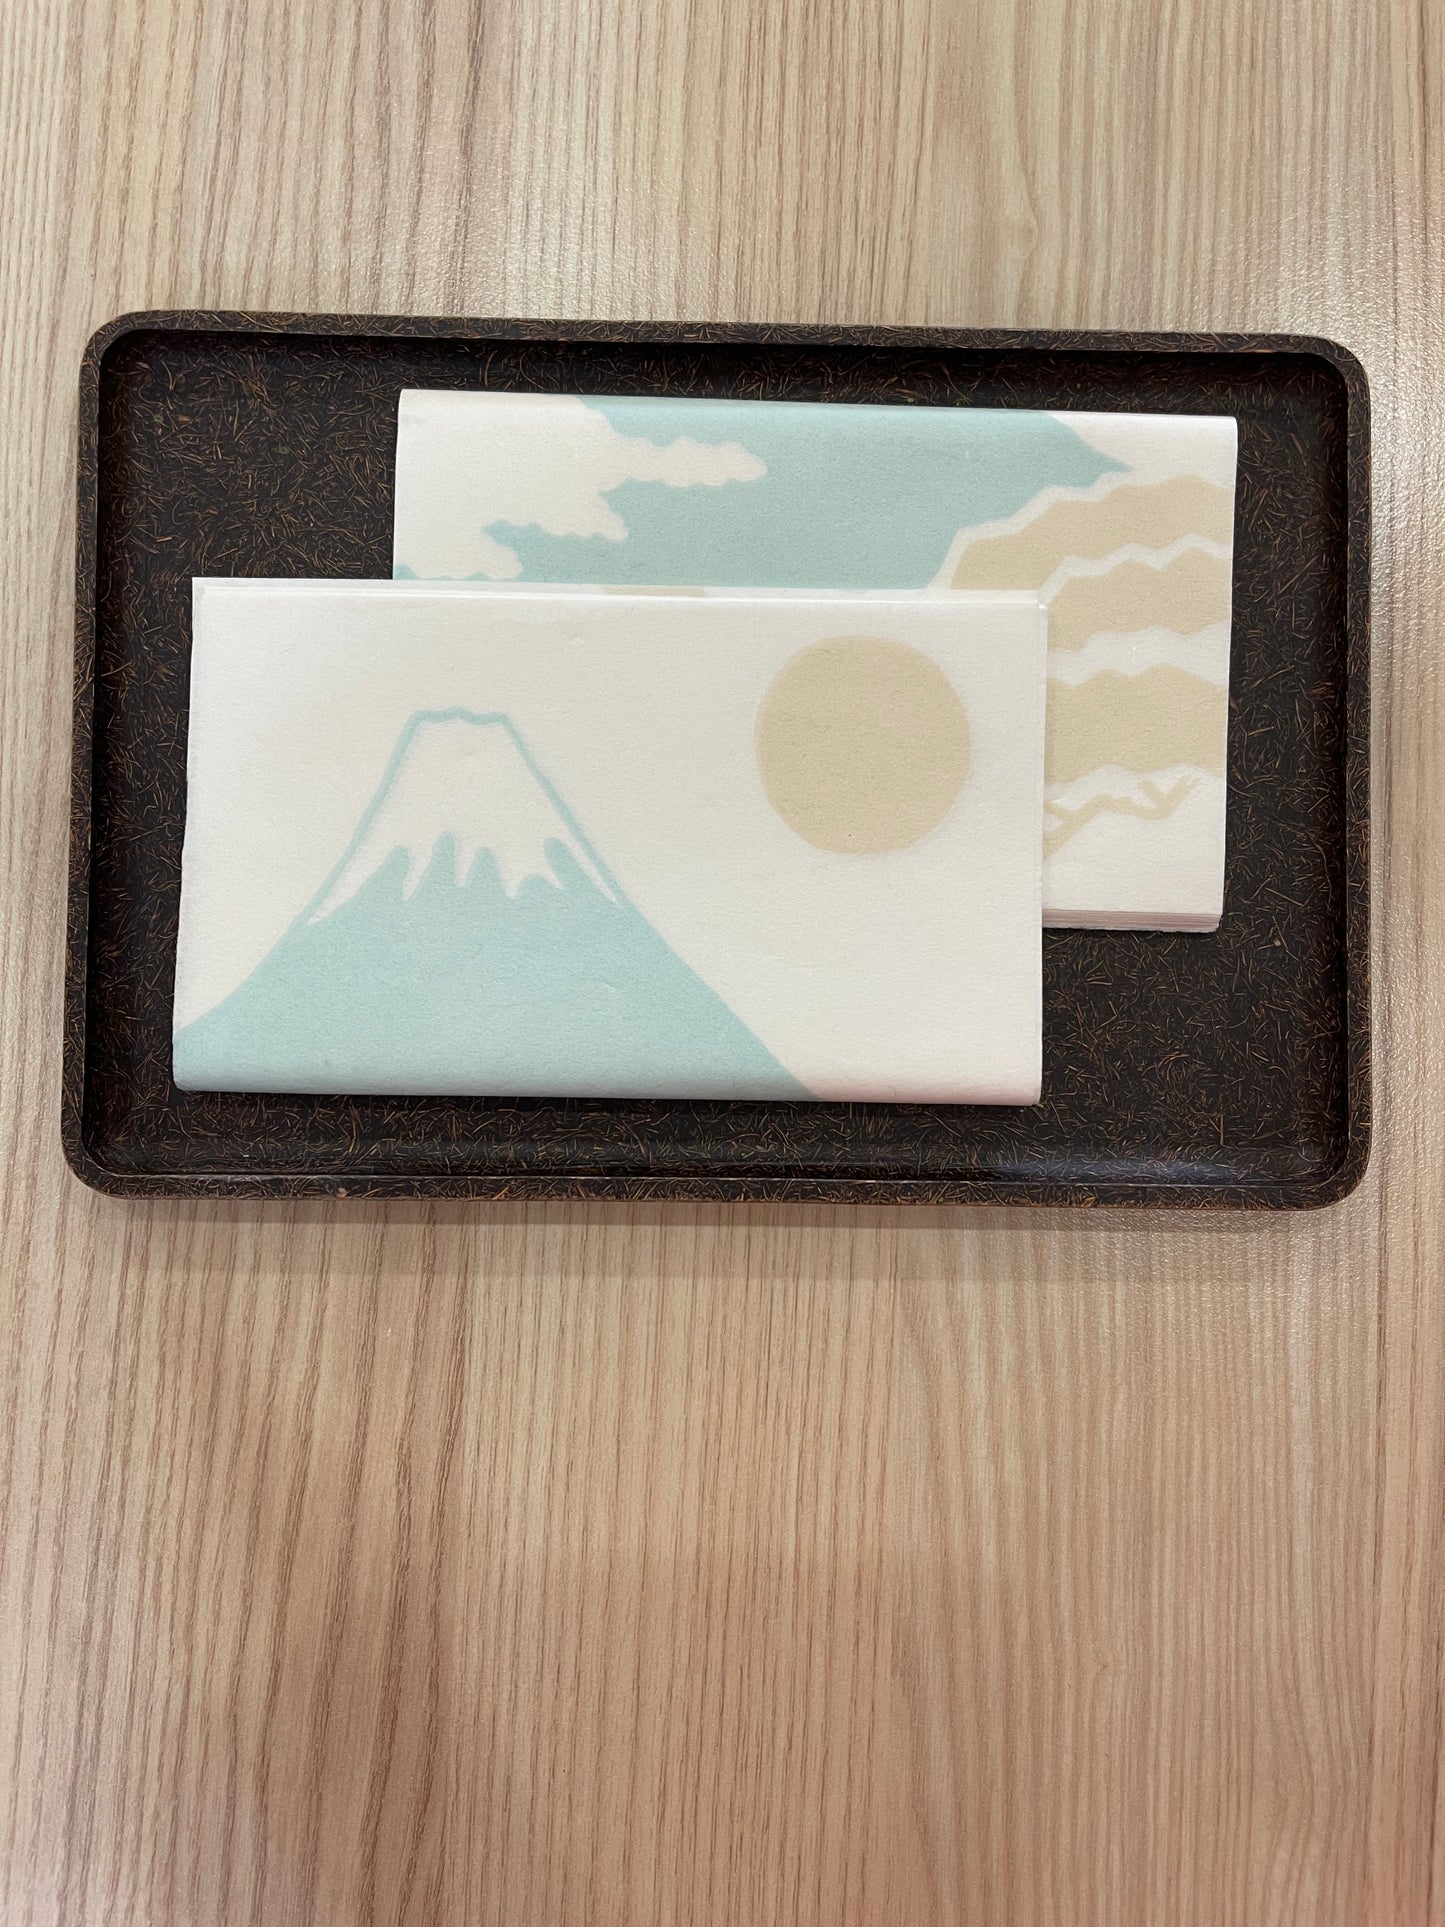 Japanese Washi Paper (Mount Fuji)